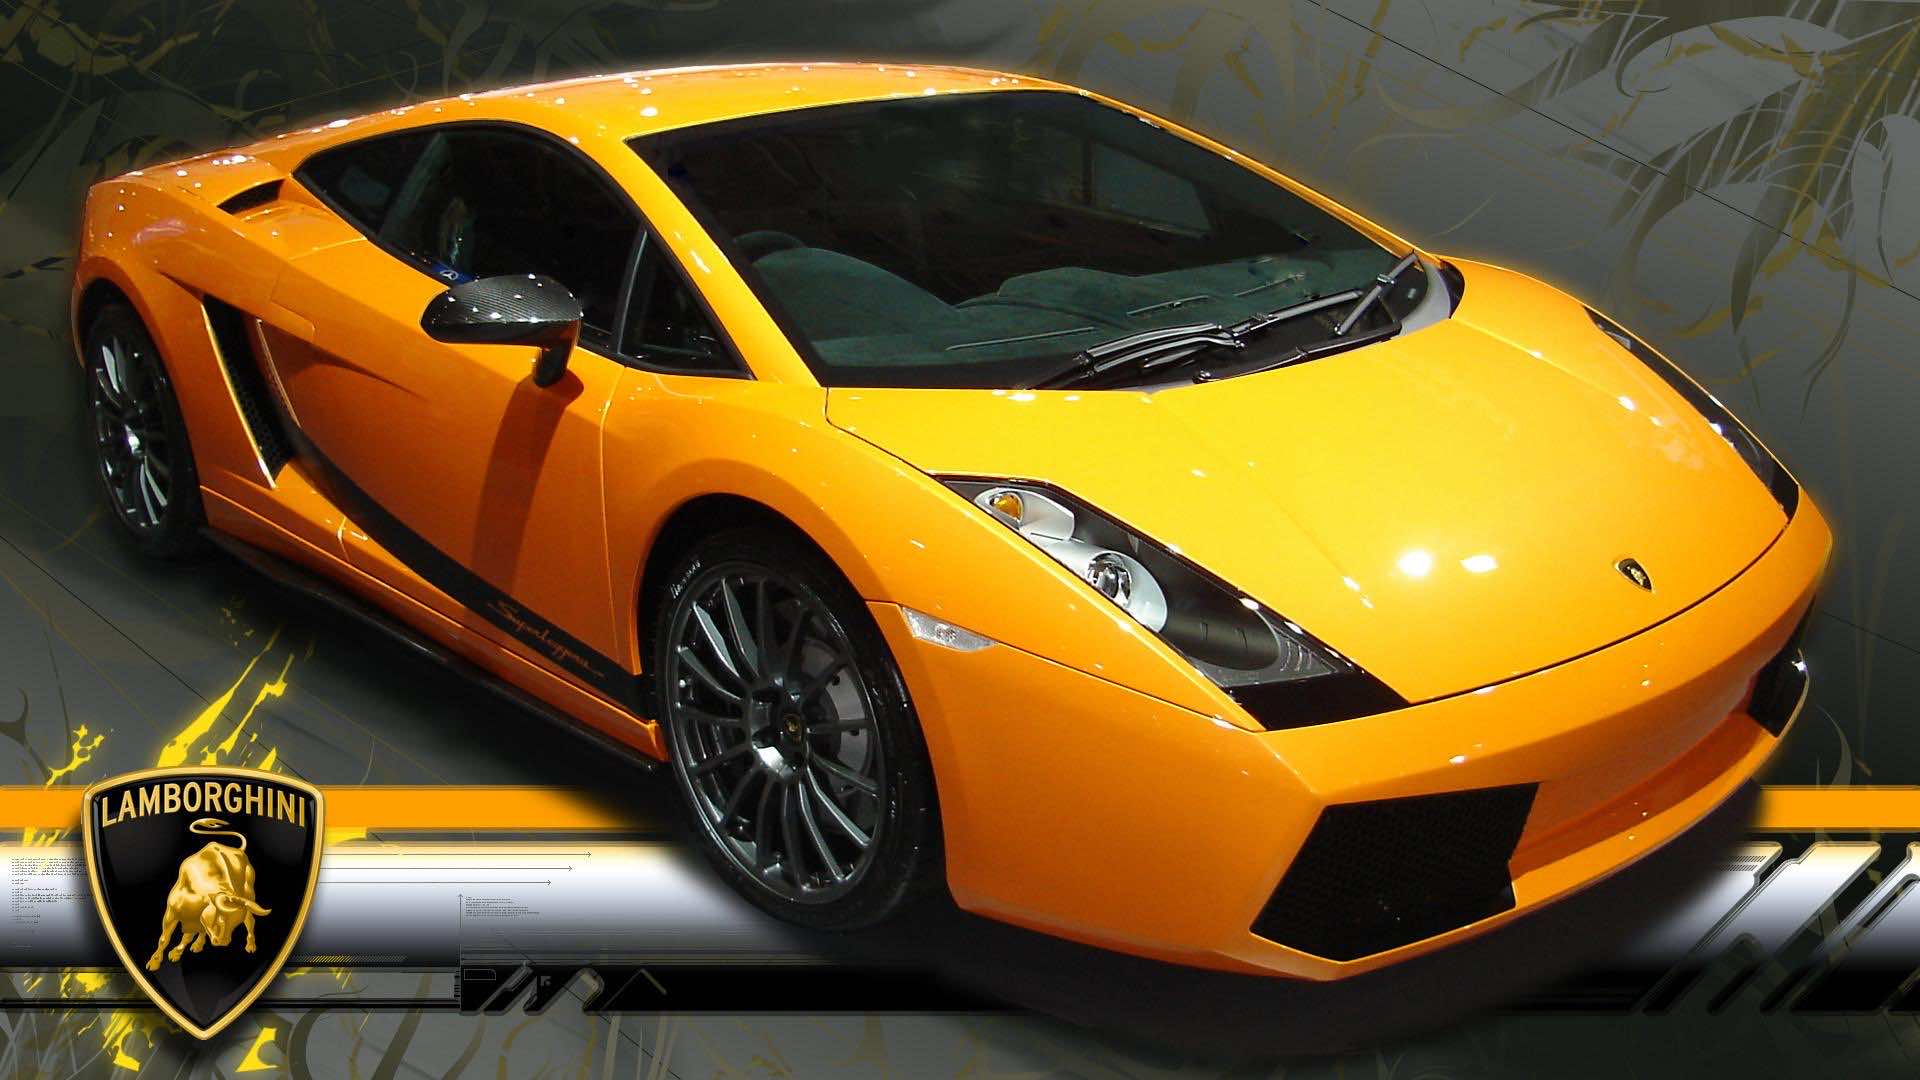 Download Lamborghini Wallpapers In HD For Desktop And ...